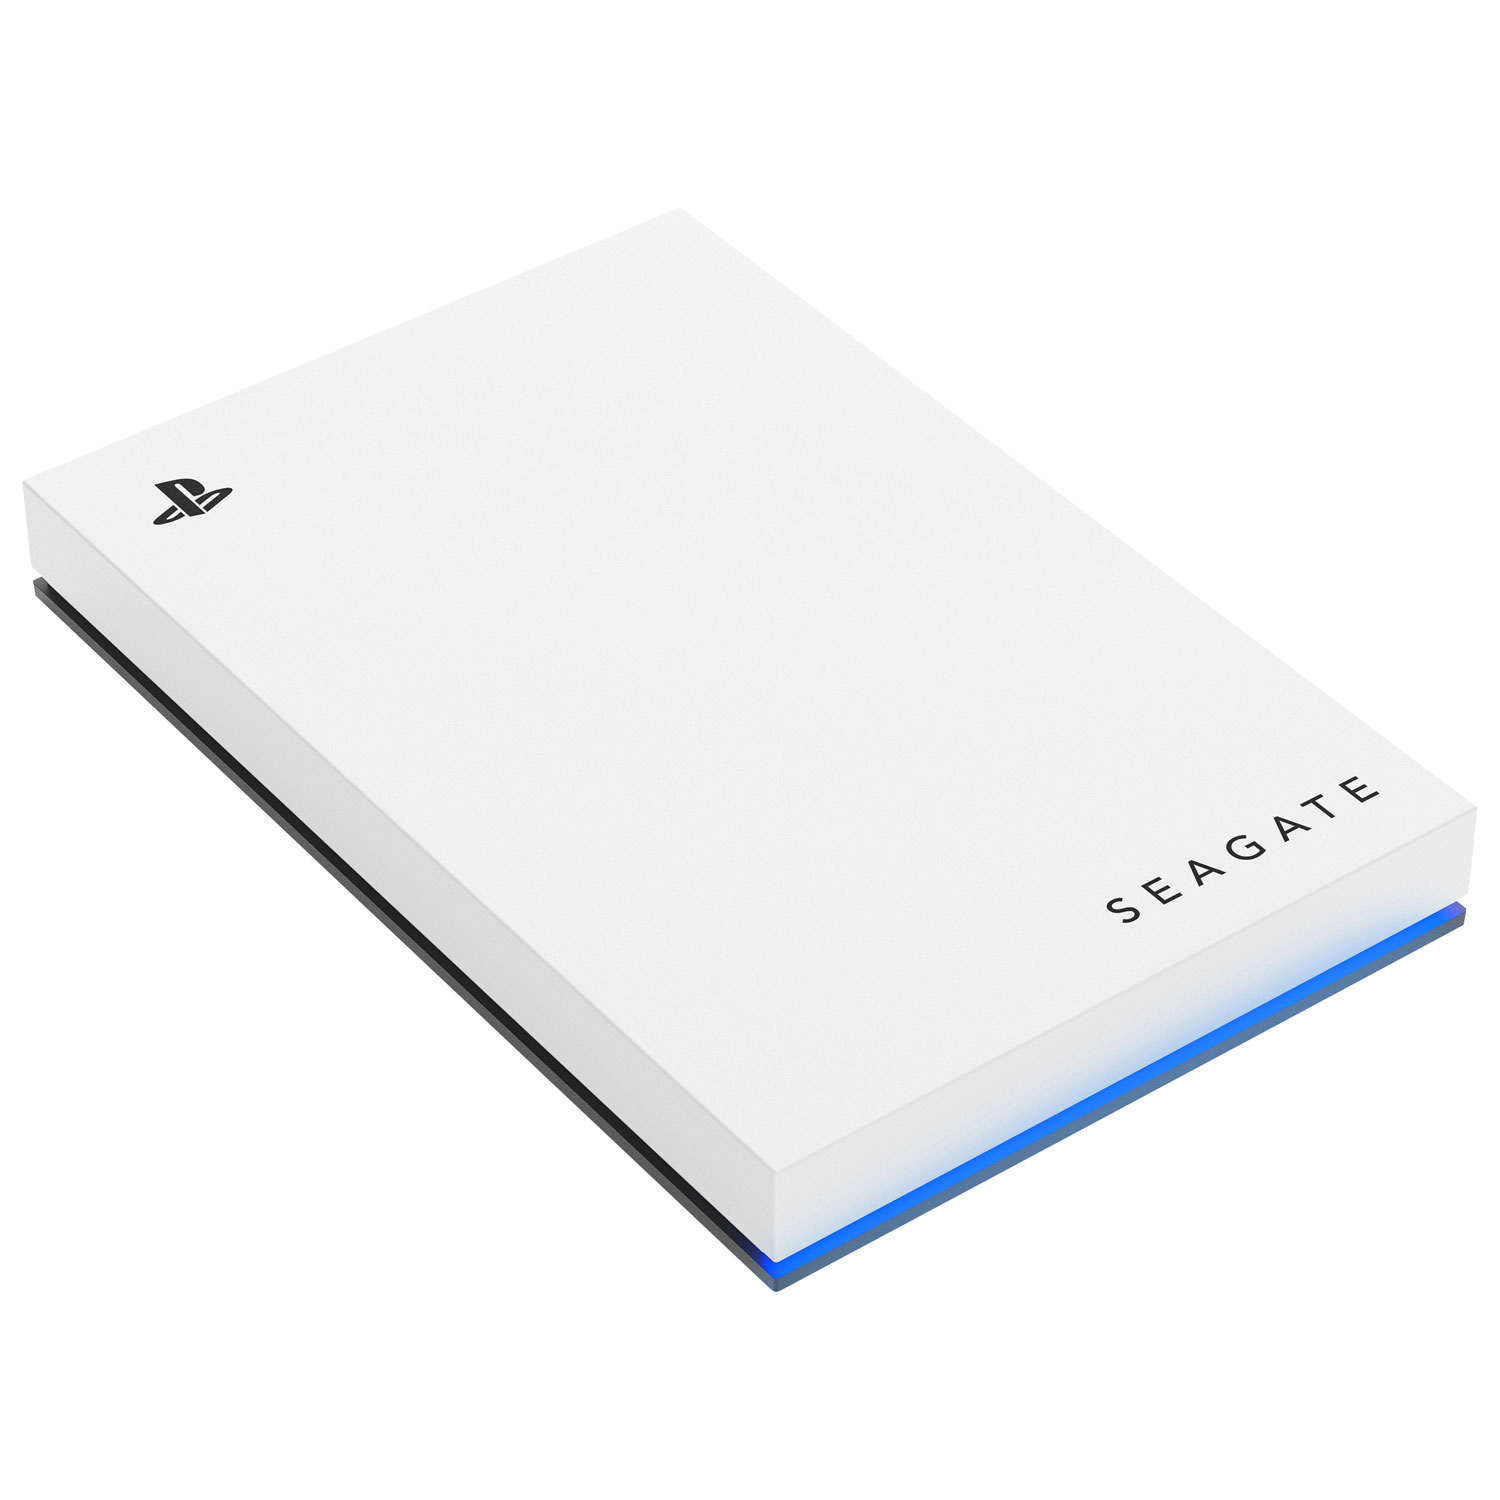 Disque dur externe USB 3.0 de 2 To de Seagate pour PlayStation  (STLV2000101) - Blanc